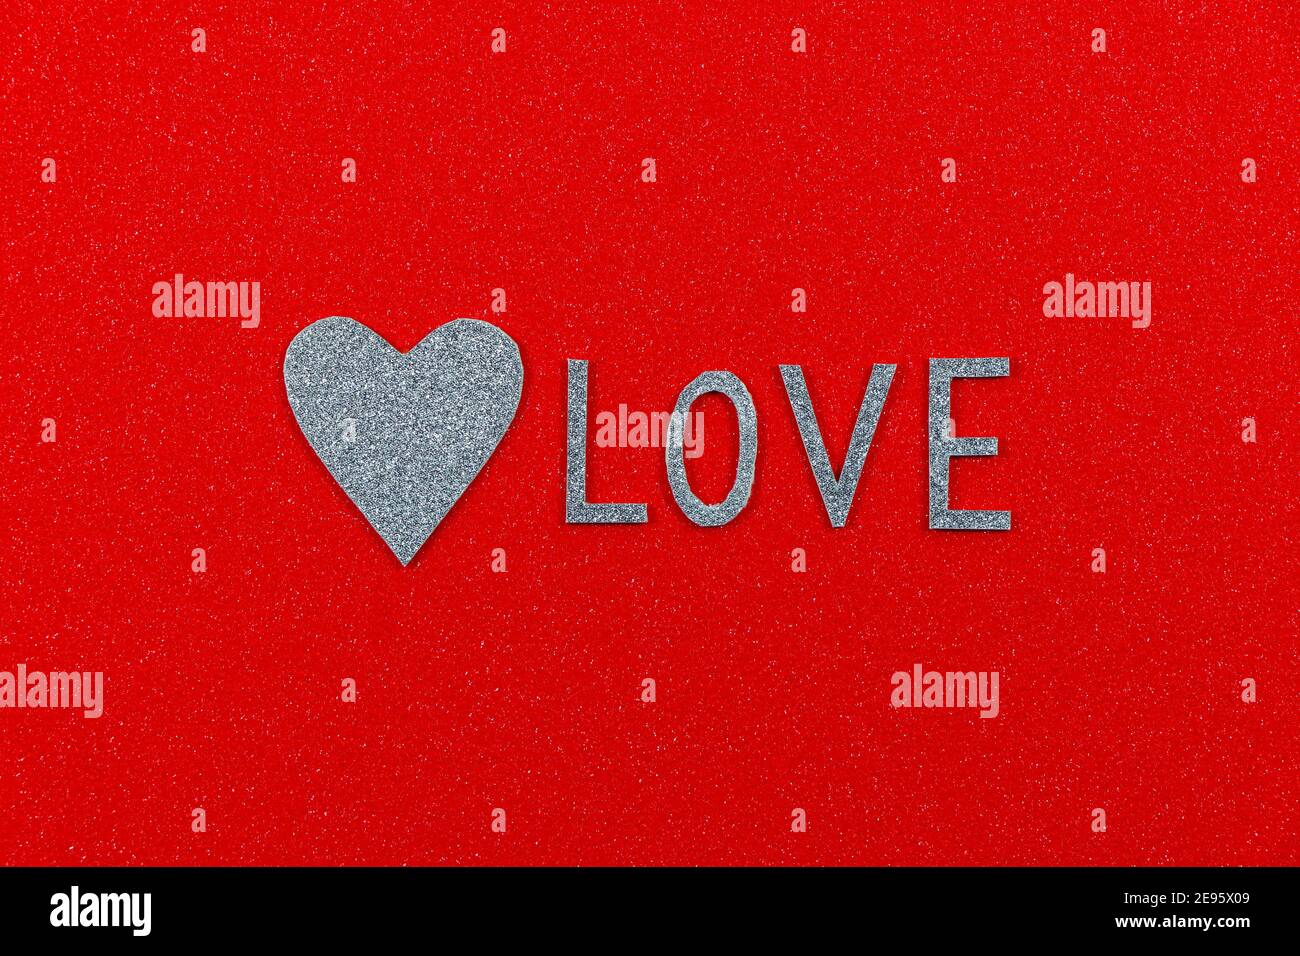 Texte « Love » et coeur argenté sur rouge texturé Banque D'Images